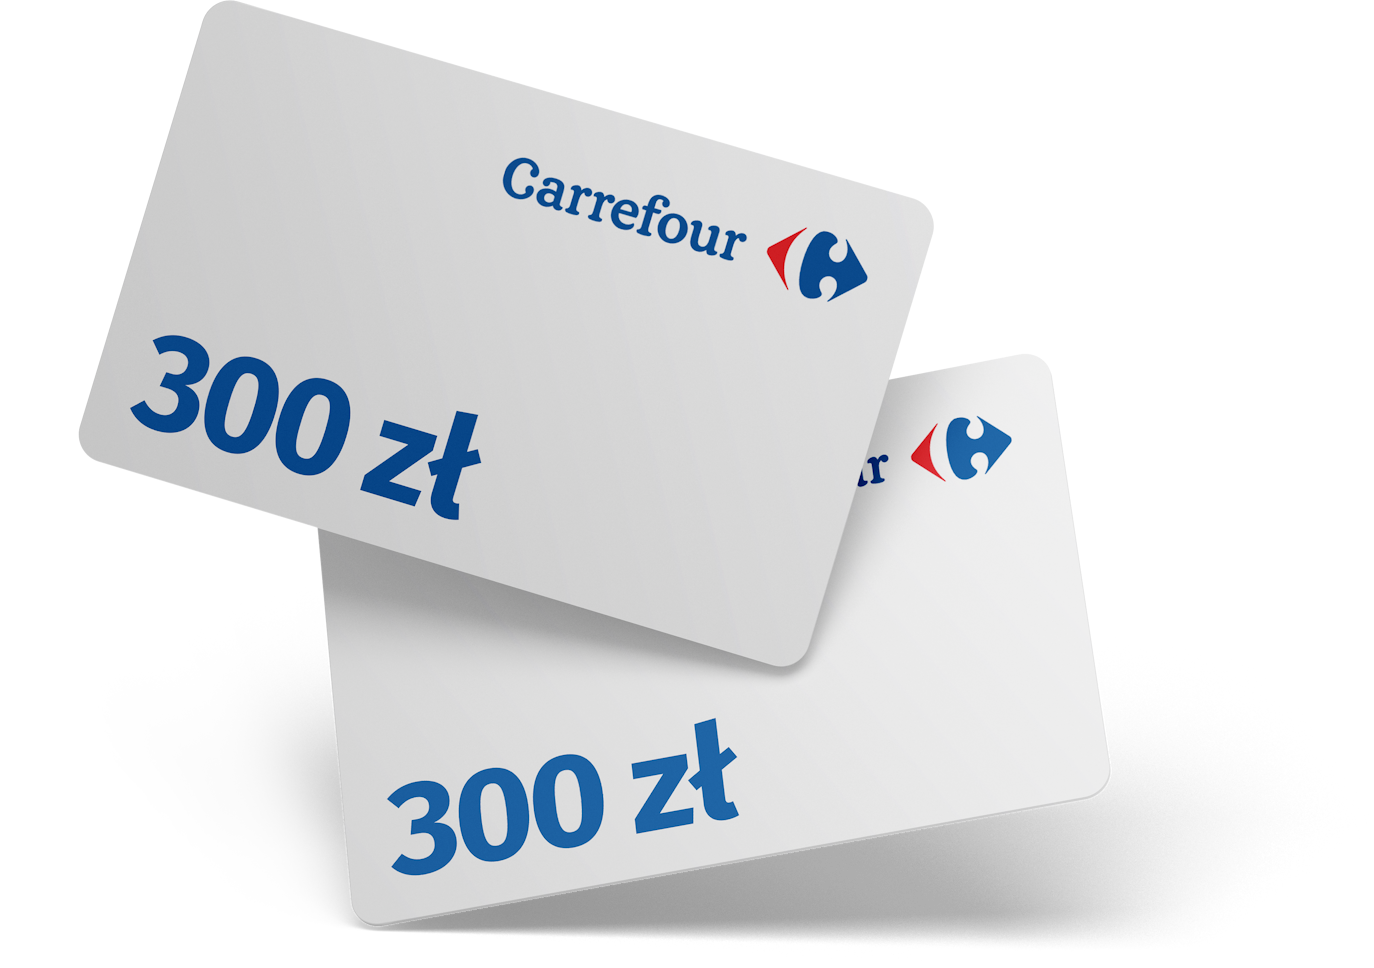 BPS Karta Carrefour 300zl v1 TF 1